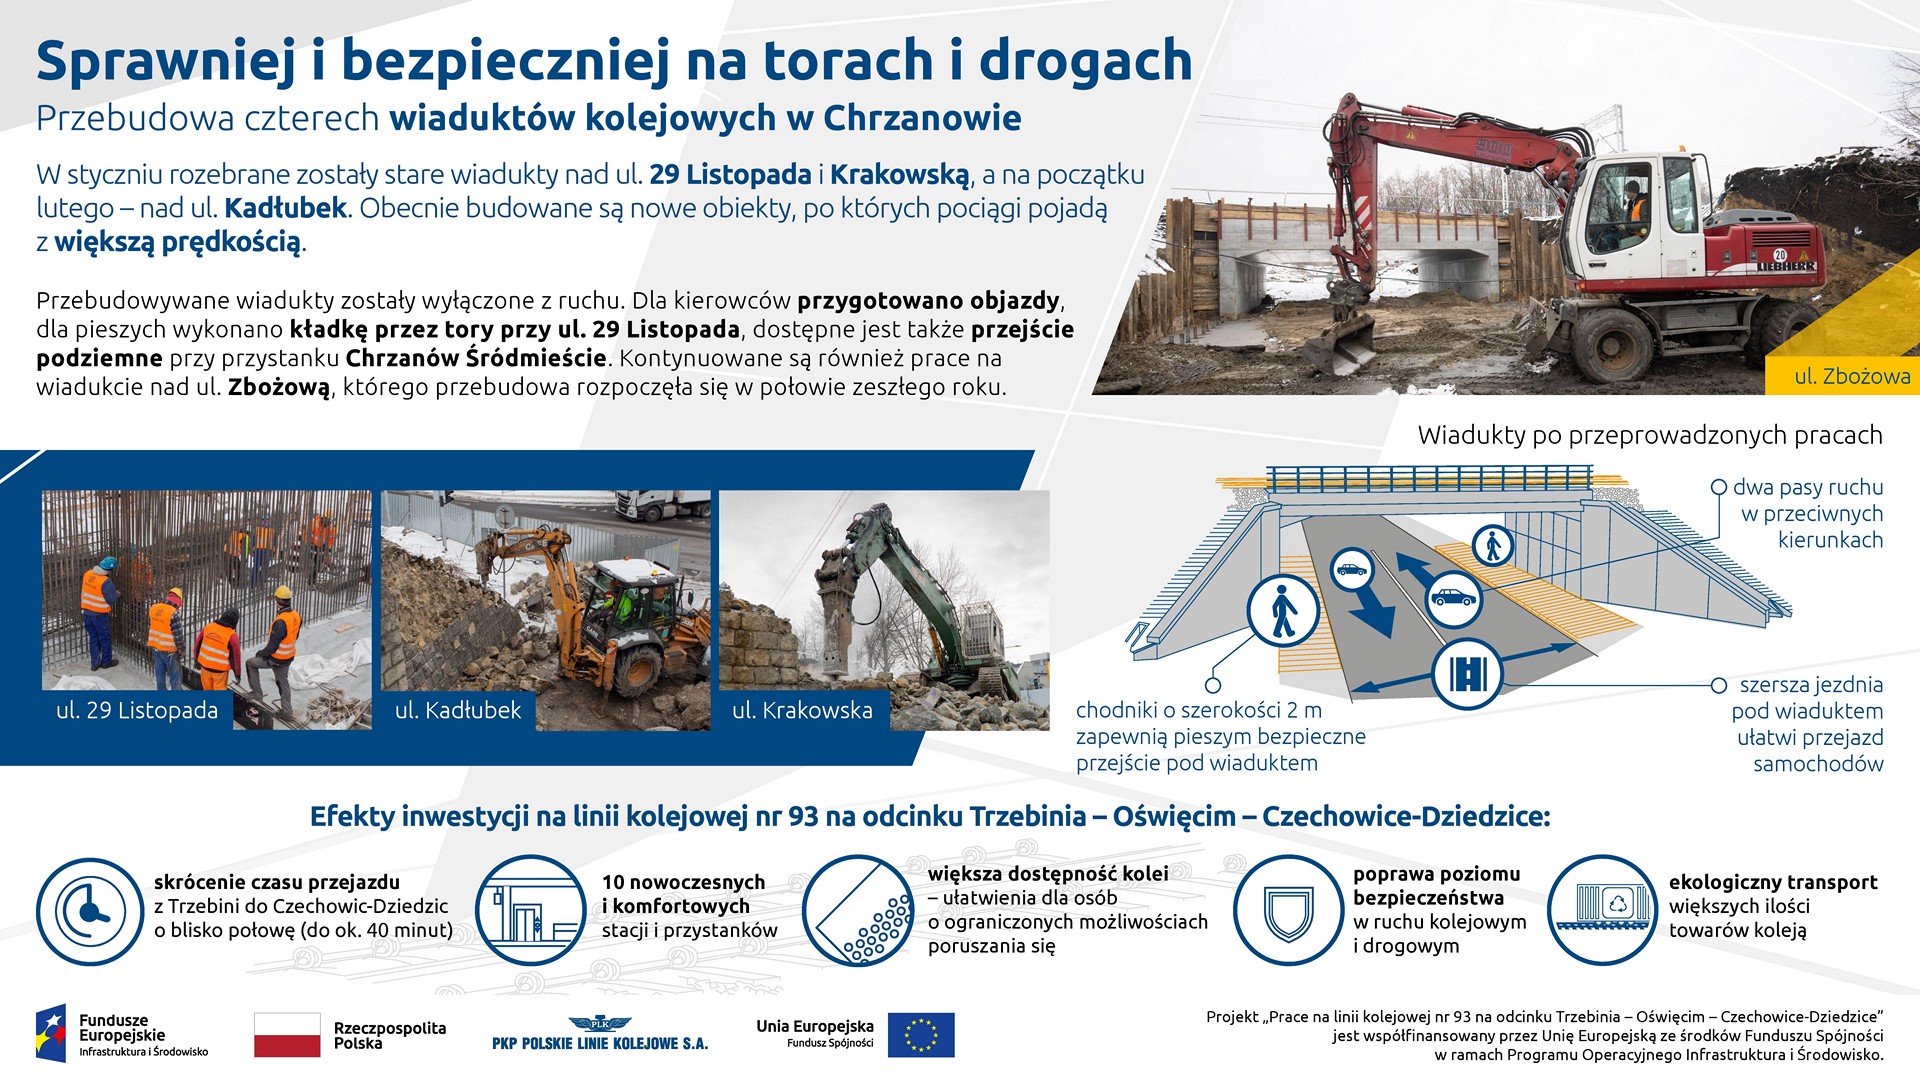 Infografika: przedstawia postęp prac na wiaduktach w Chrzanowie. Pokazuje zdjęcia z ulicy 29 listopada, Kadłubek i Krakowskiej. Dodatkowo pokazuje wizualizacje nowych konstrukcji oraz korzyści wynikające z inwestycji.